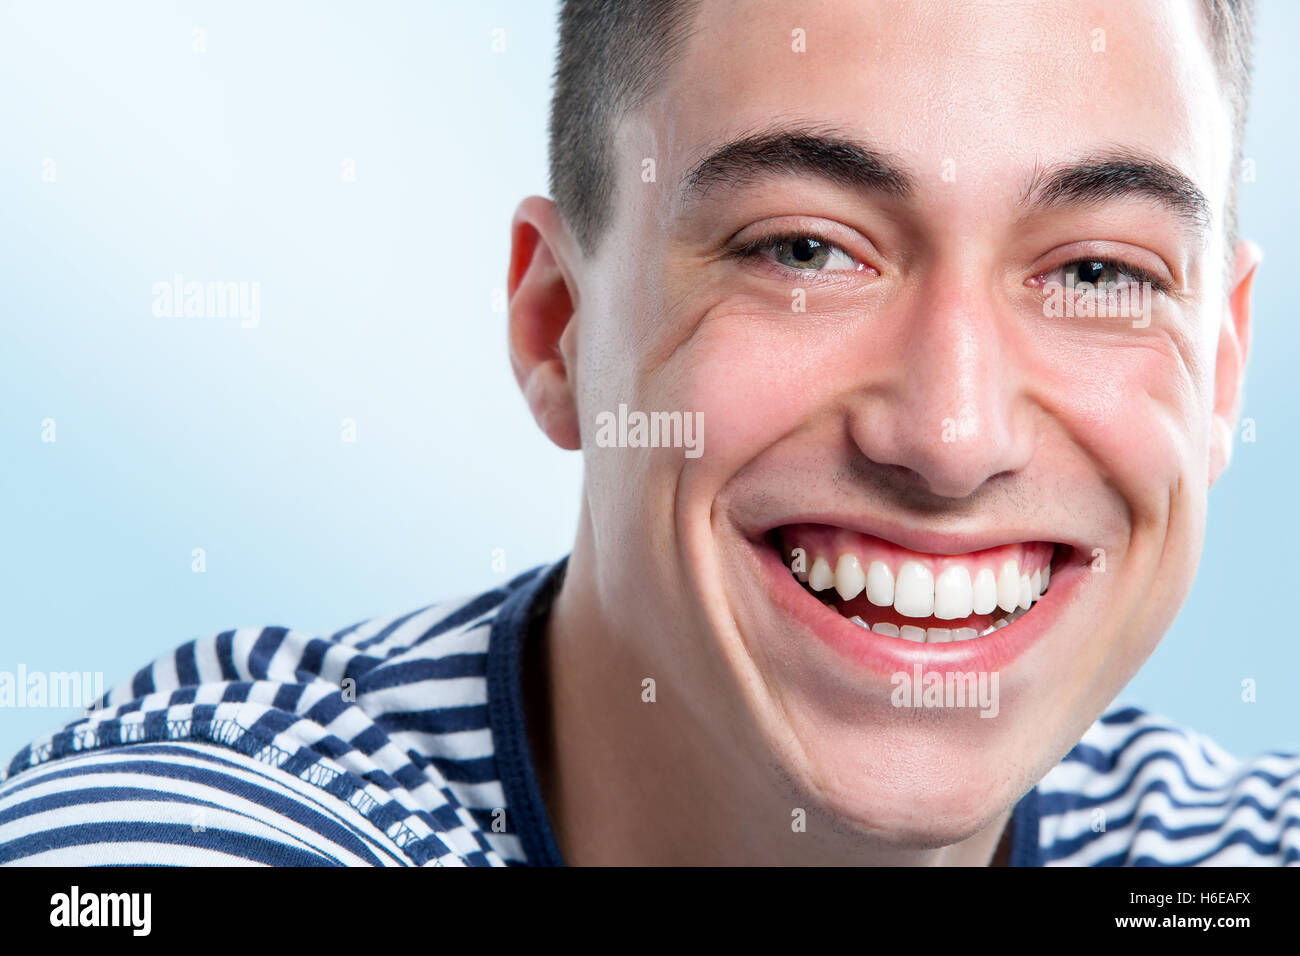 Extreme Nahaufnahme Gesicht des Jünglings mit charmanten und gesunde toothy Lächeln. Stockfoto